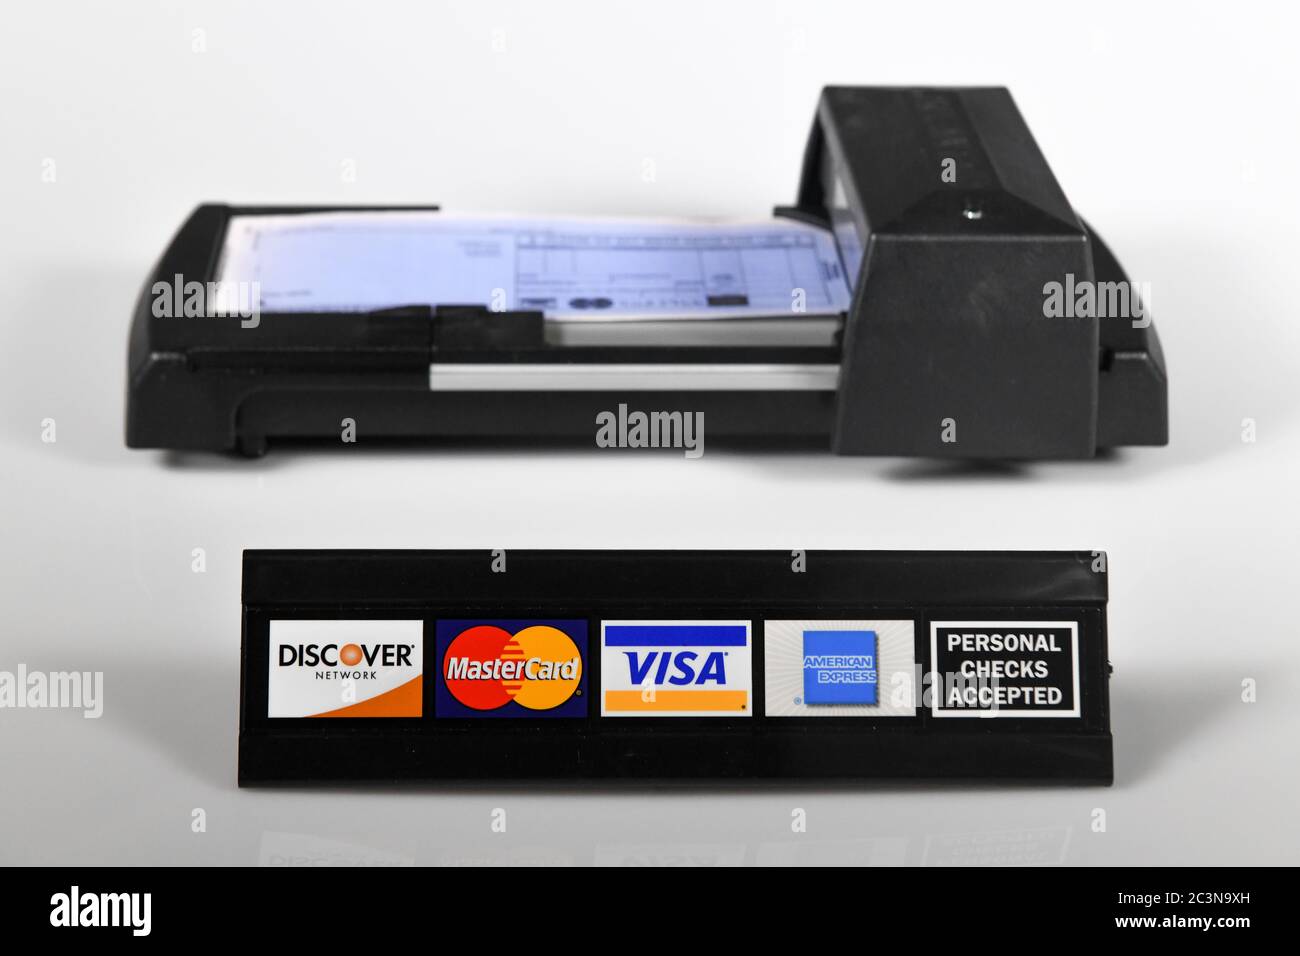 Macchina manuale per carte di credito - vecchia tecnologia - stampante manuale per carte di credito con logo di carte di credito - segno di spunta personale Foto Stock